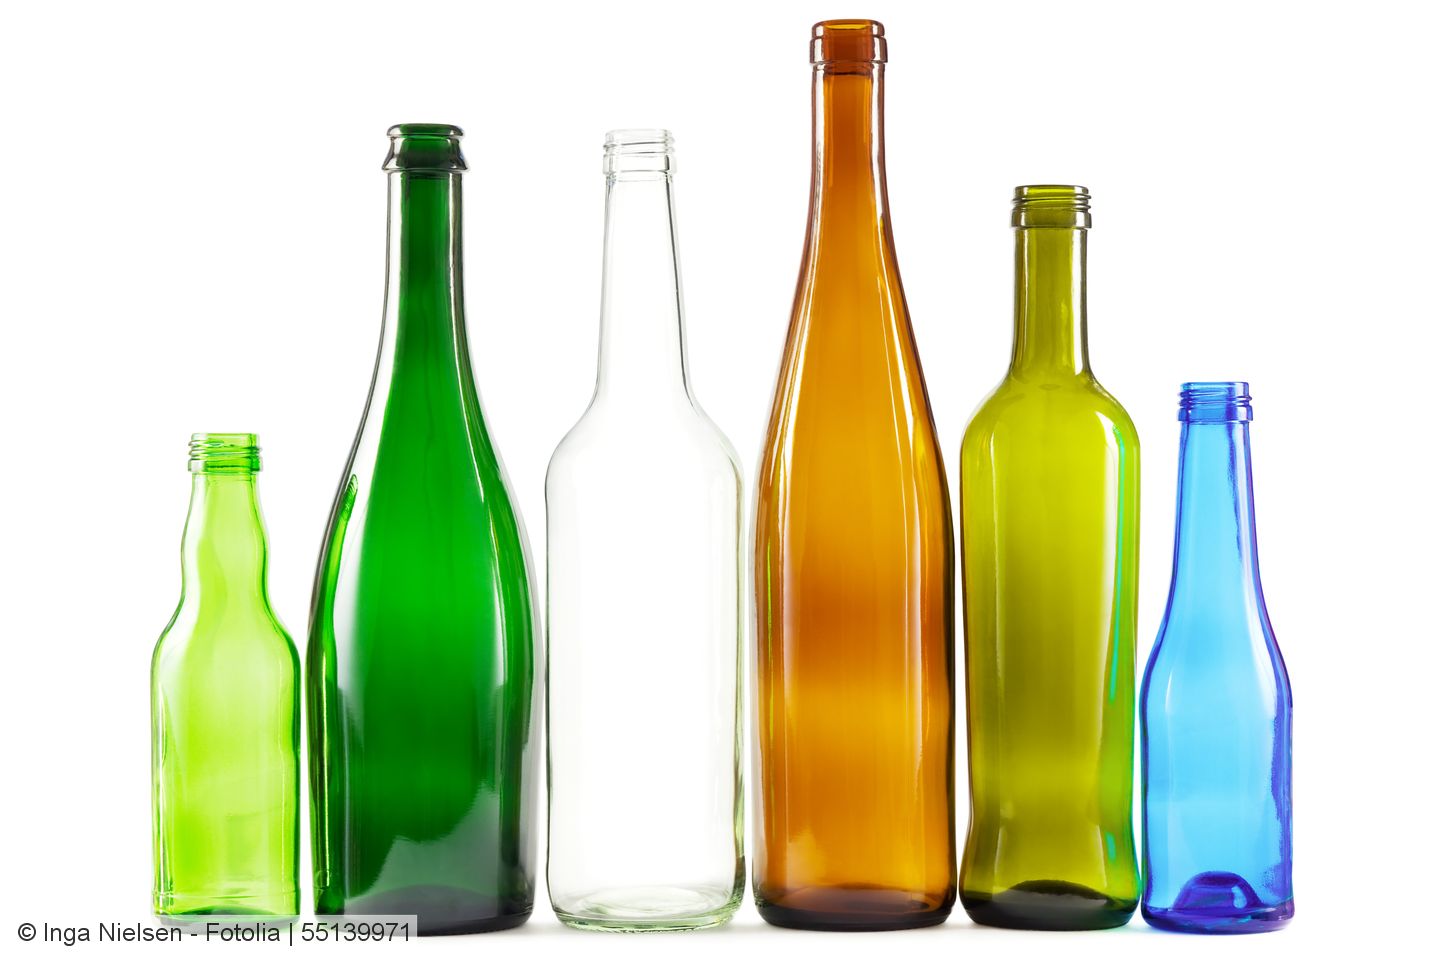 Für Glasverpackungen sind Angaben zu Rezyklatgehalten kaum praktikabel oder sinnvoll